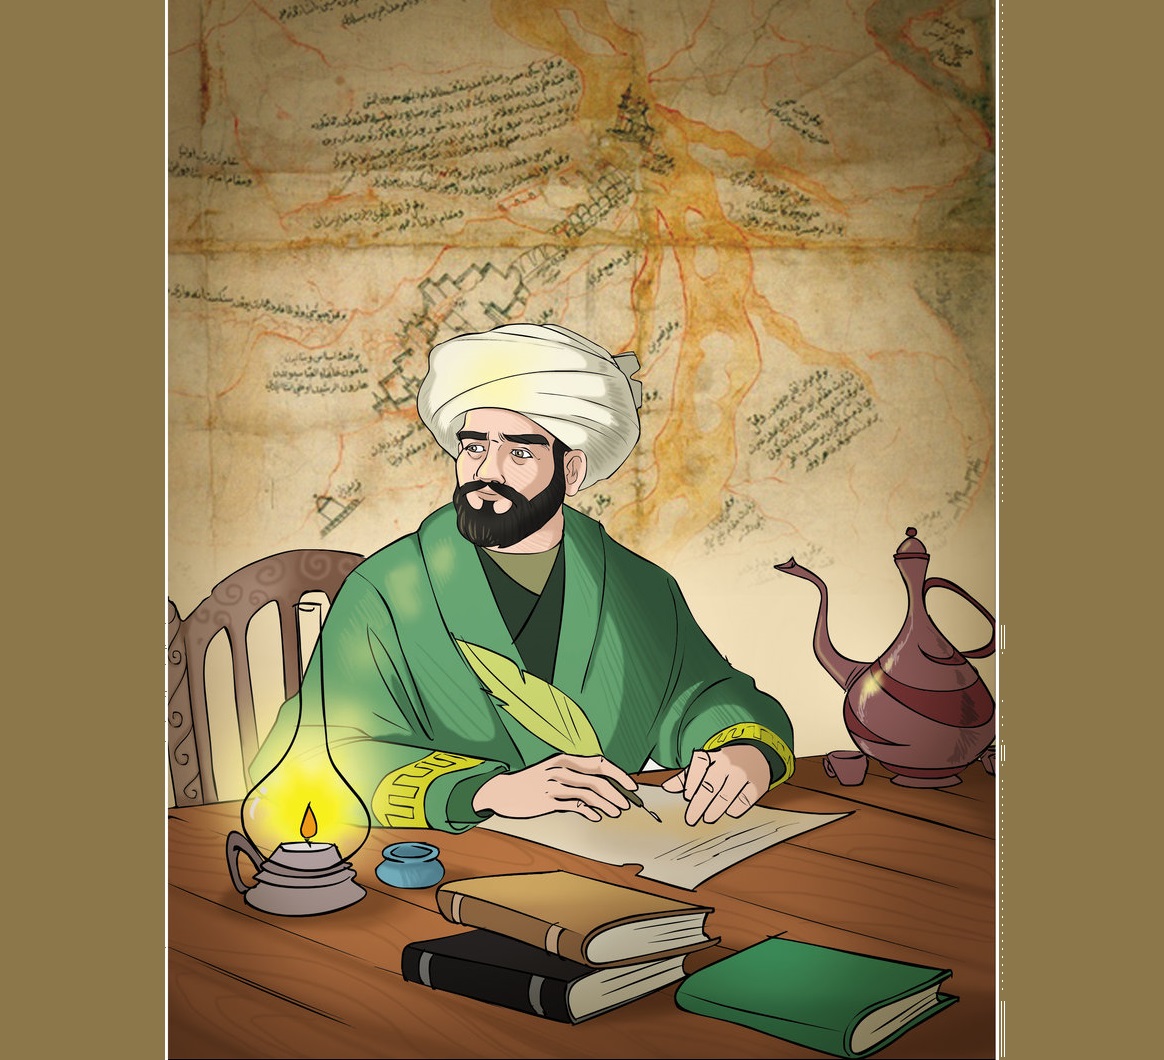 Evliya Çelebi Kimdir Hayatı Ve Seyahatnamesi Kitabı 17. Yüzyıl Osmanlı Topraklarını 40 Yıldan Uzun Süren Gezmiştir